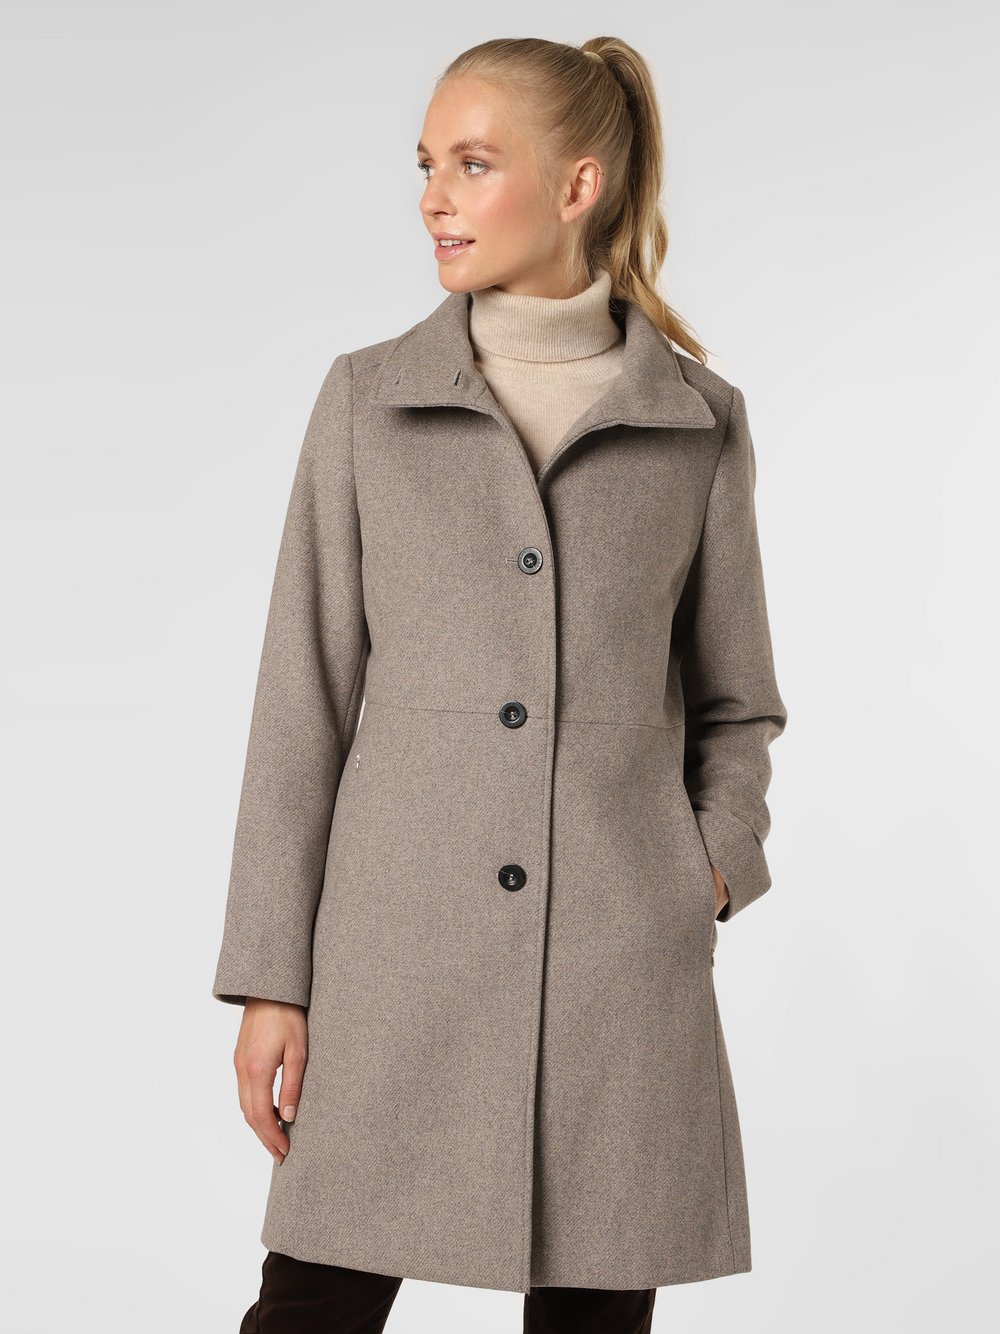 Esprit Collection - Płaszcz damski, beżowy